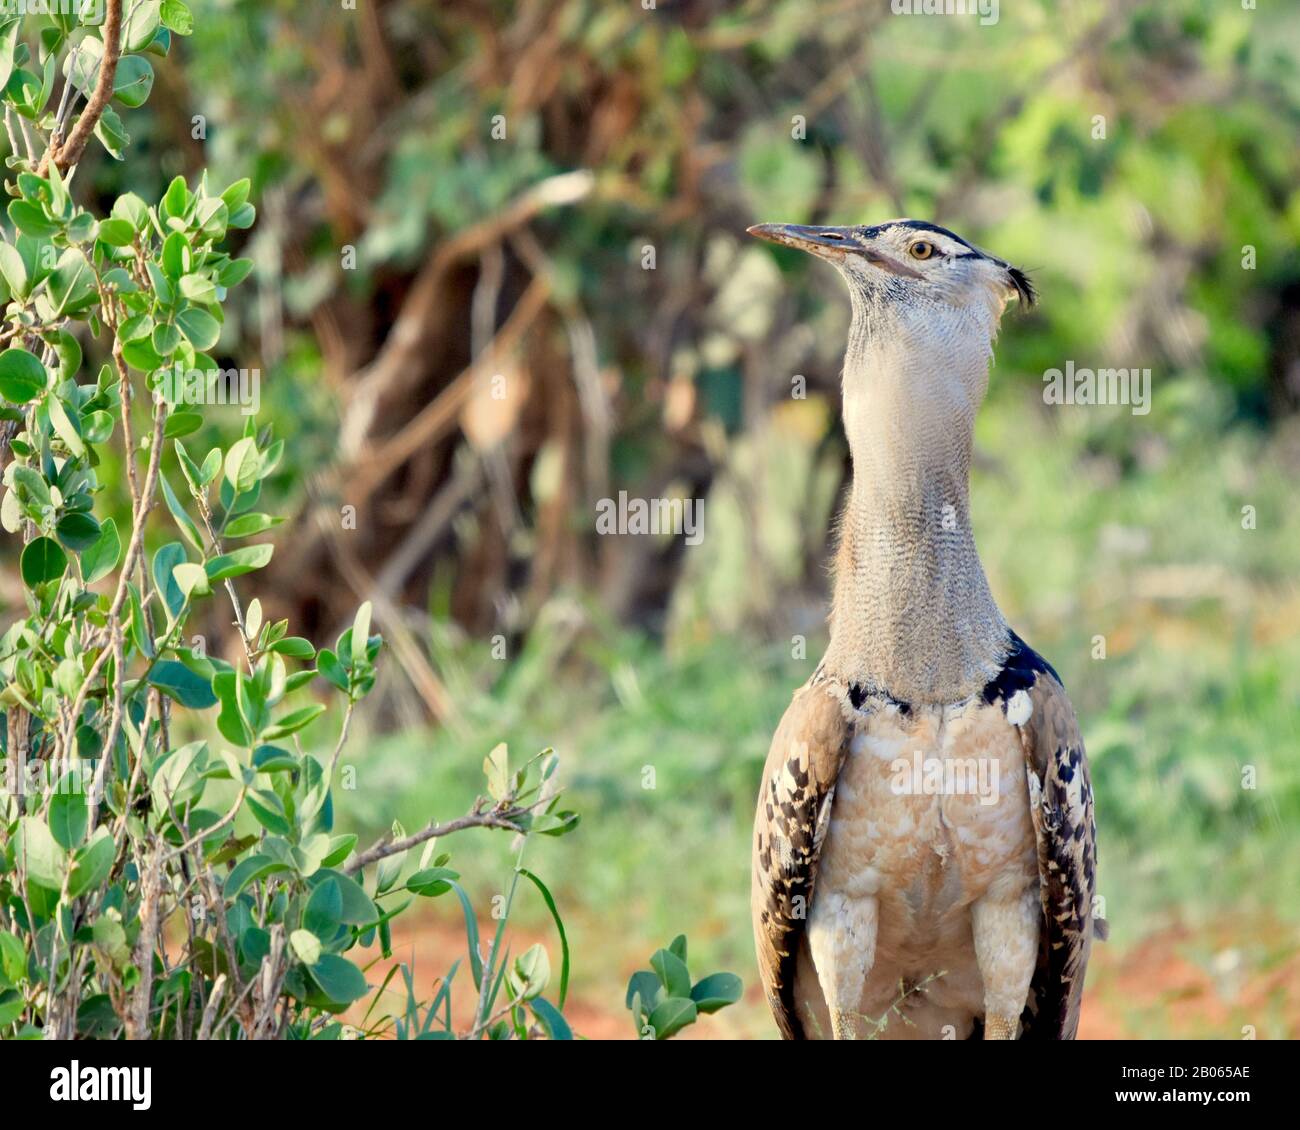 Un outarde Kori (Ardeotis kori) est grand espérant échapper à la notification. Parc national de Tsavo East, Kenya. Banque D'Images